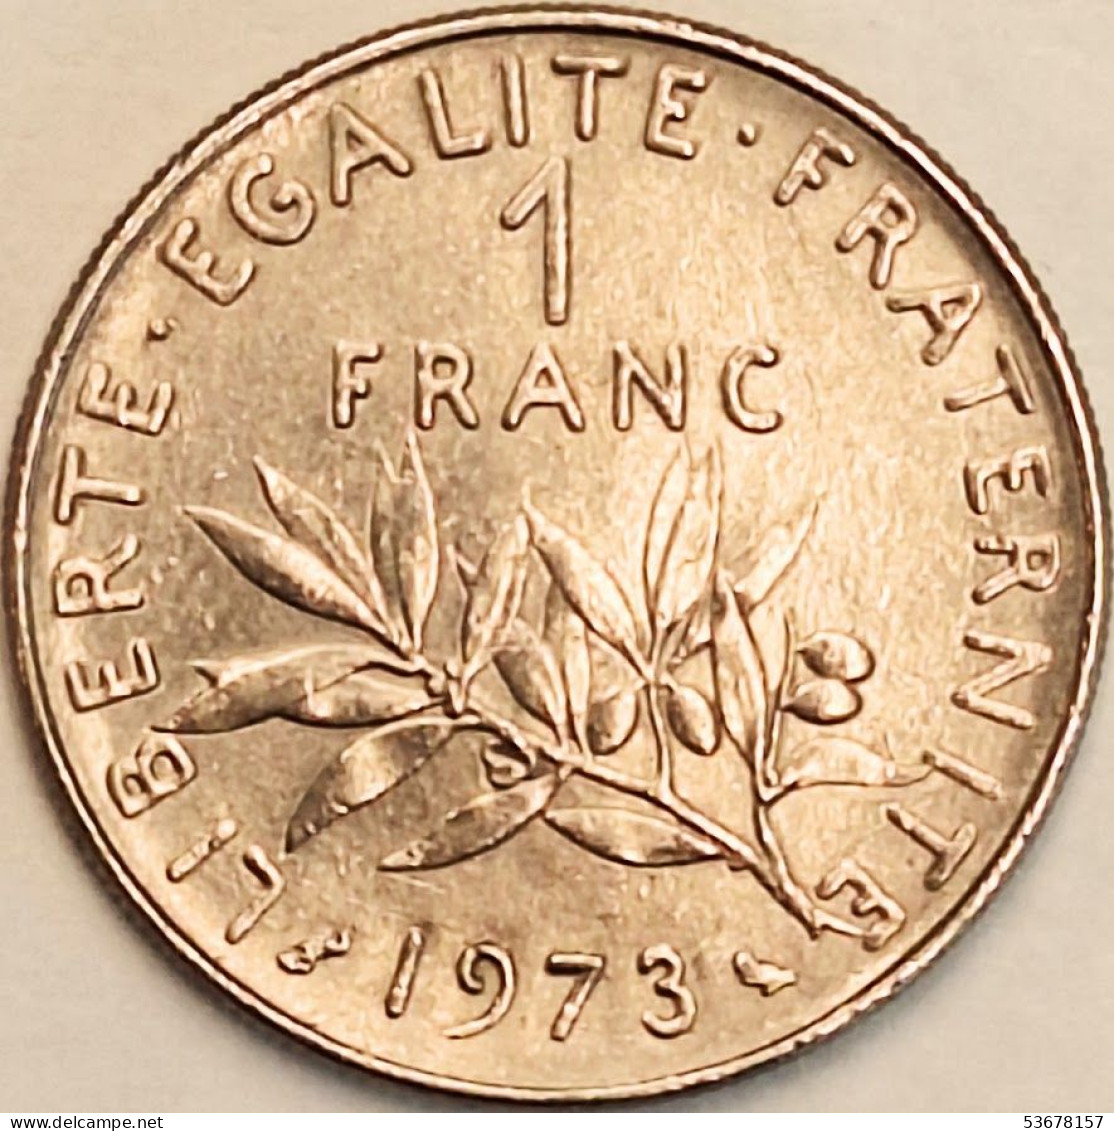 France - Franc 1973, KM# 925.1 (#4317) - 1 Franc